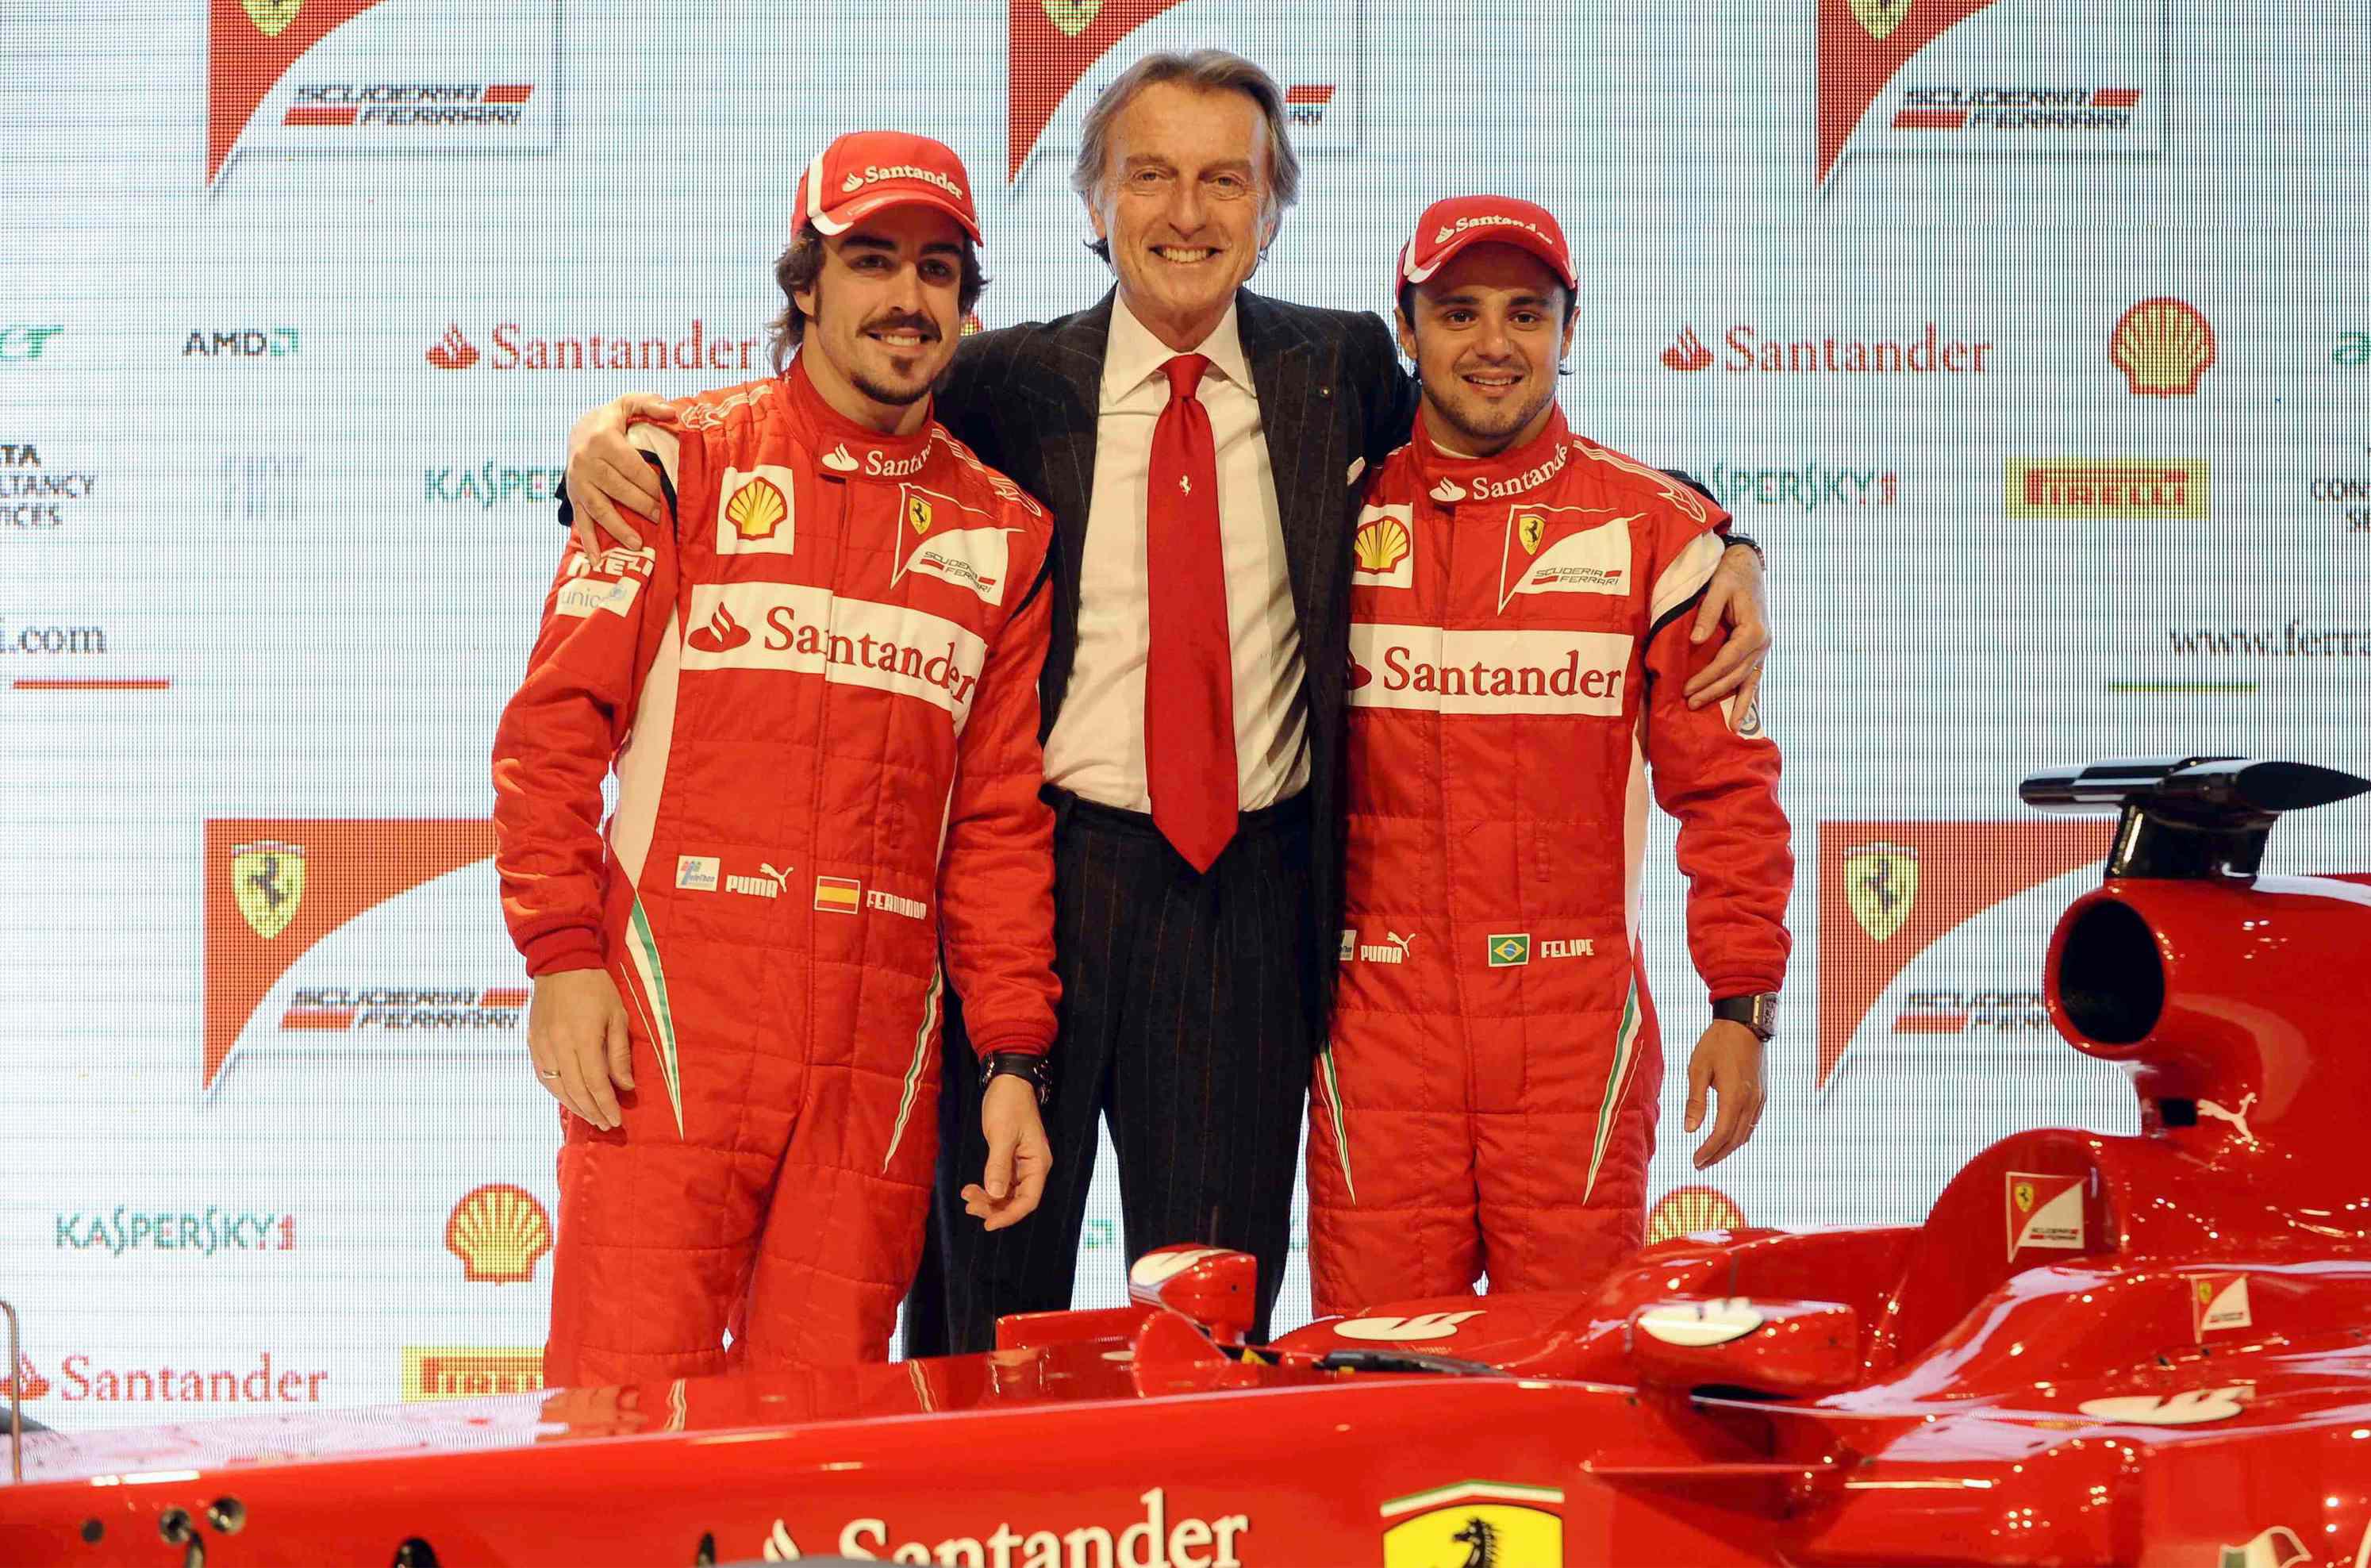 Presentazione della nuova monoposto Ferrari F150 (2011) con Fernando Alonso e Felipe Massa (Foto Infophoto)